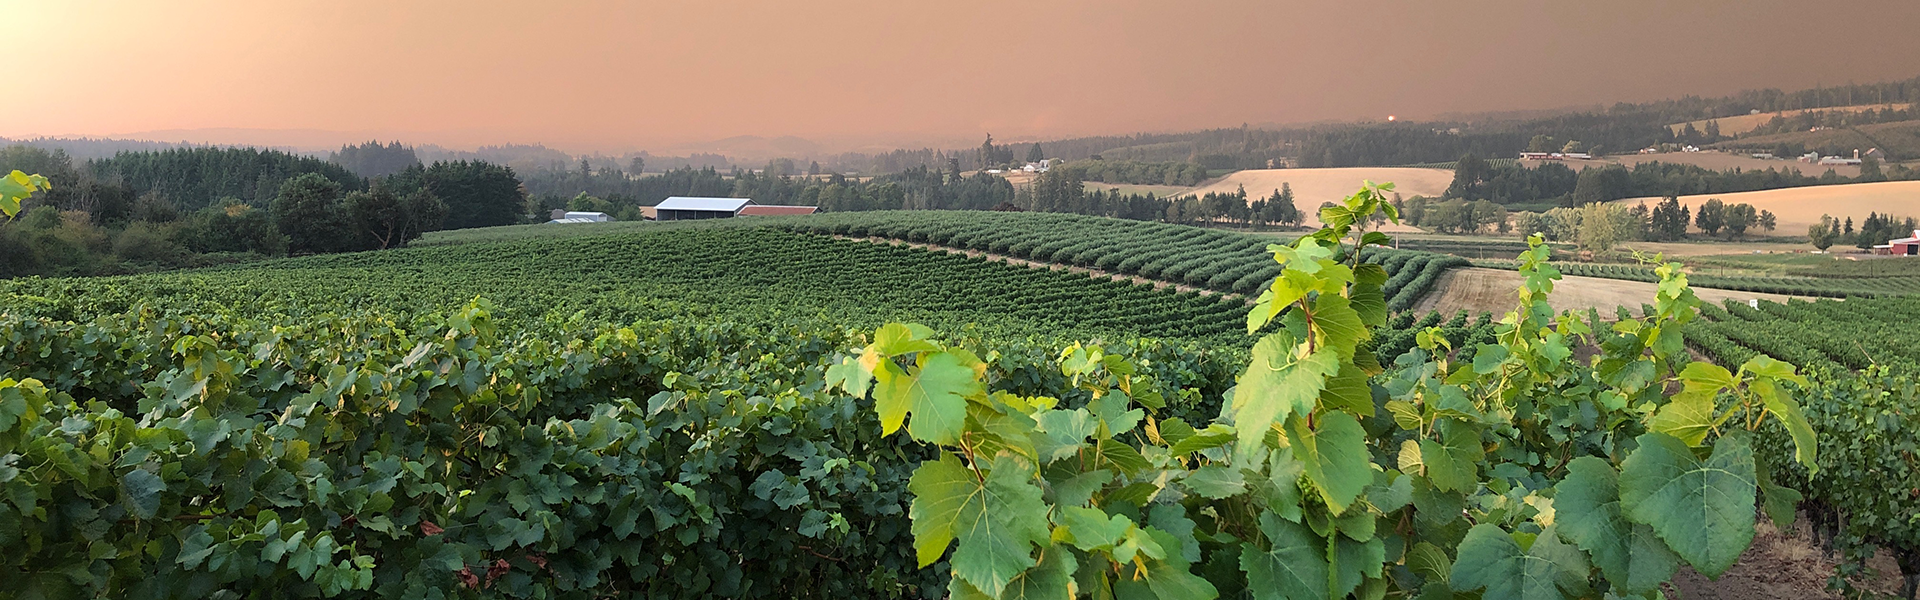 vineyard with smoke-filled air